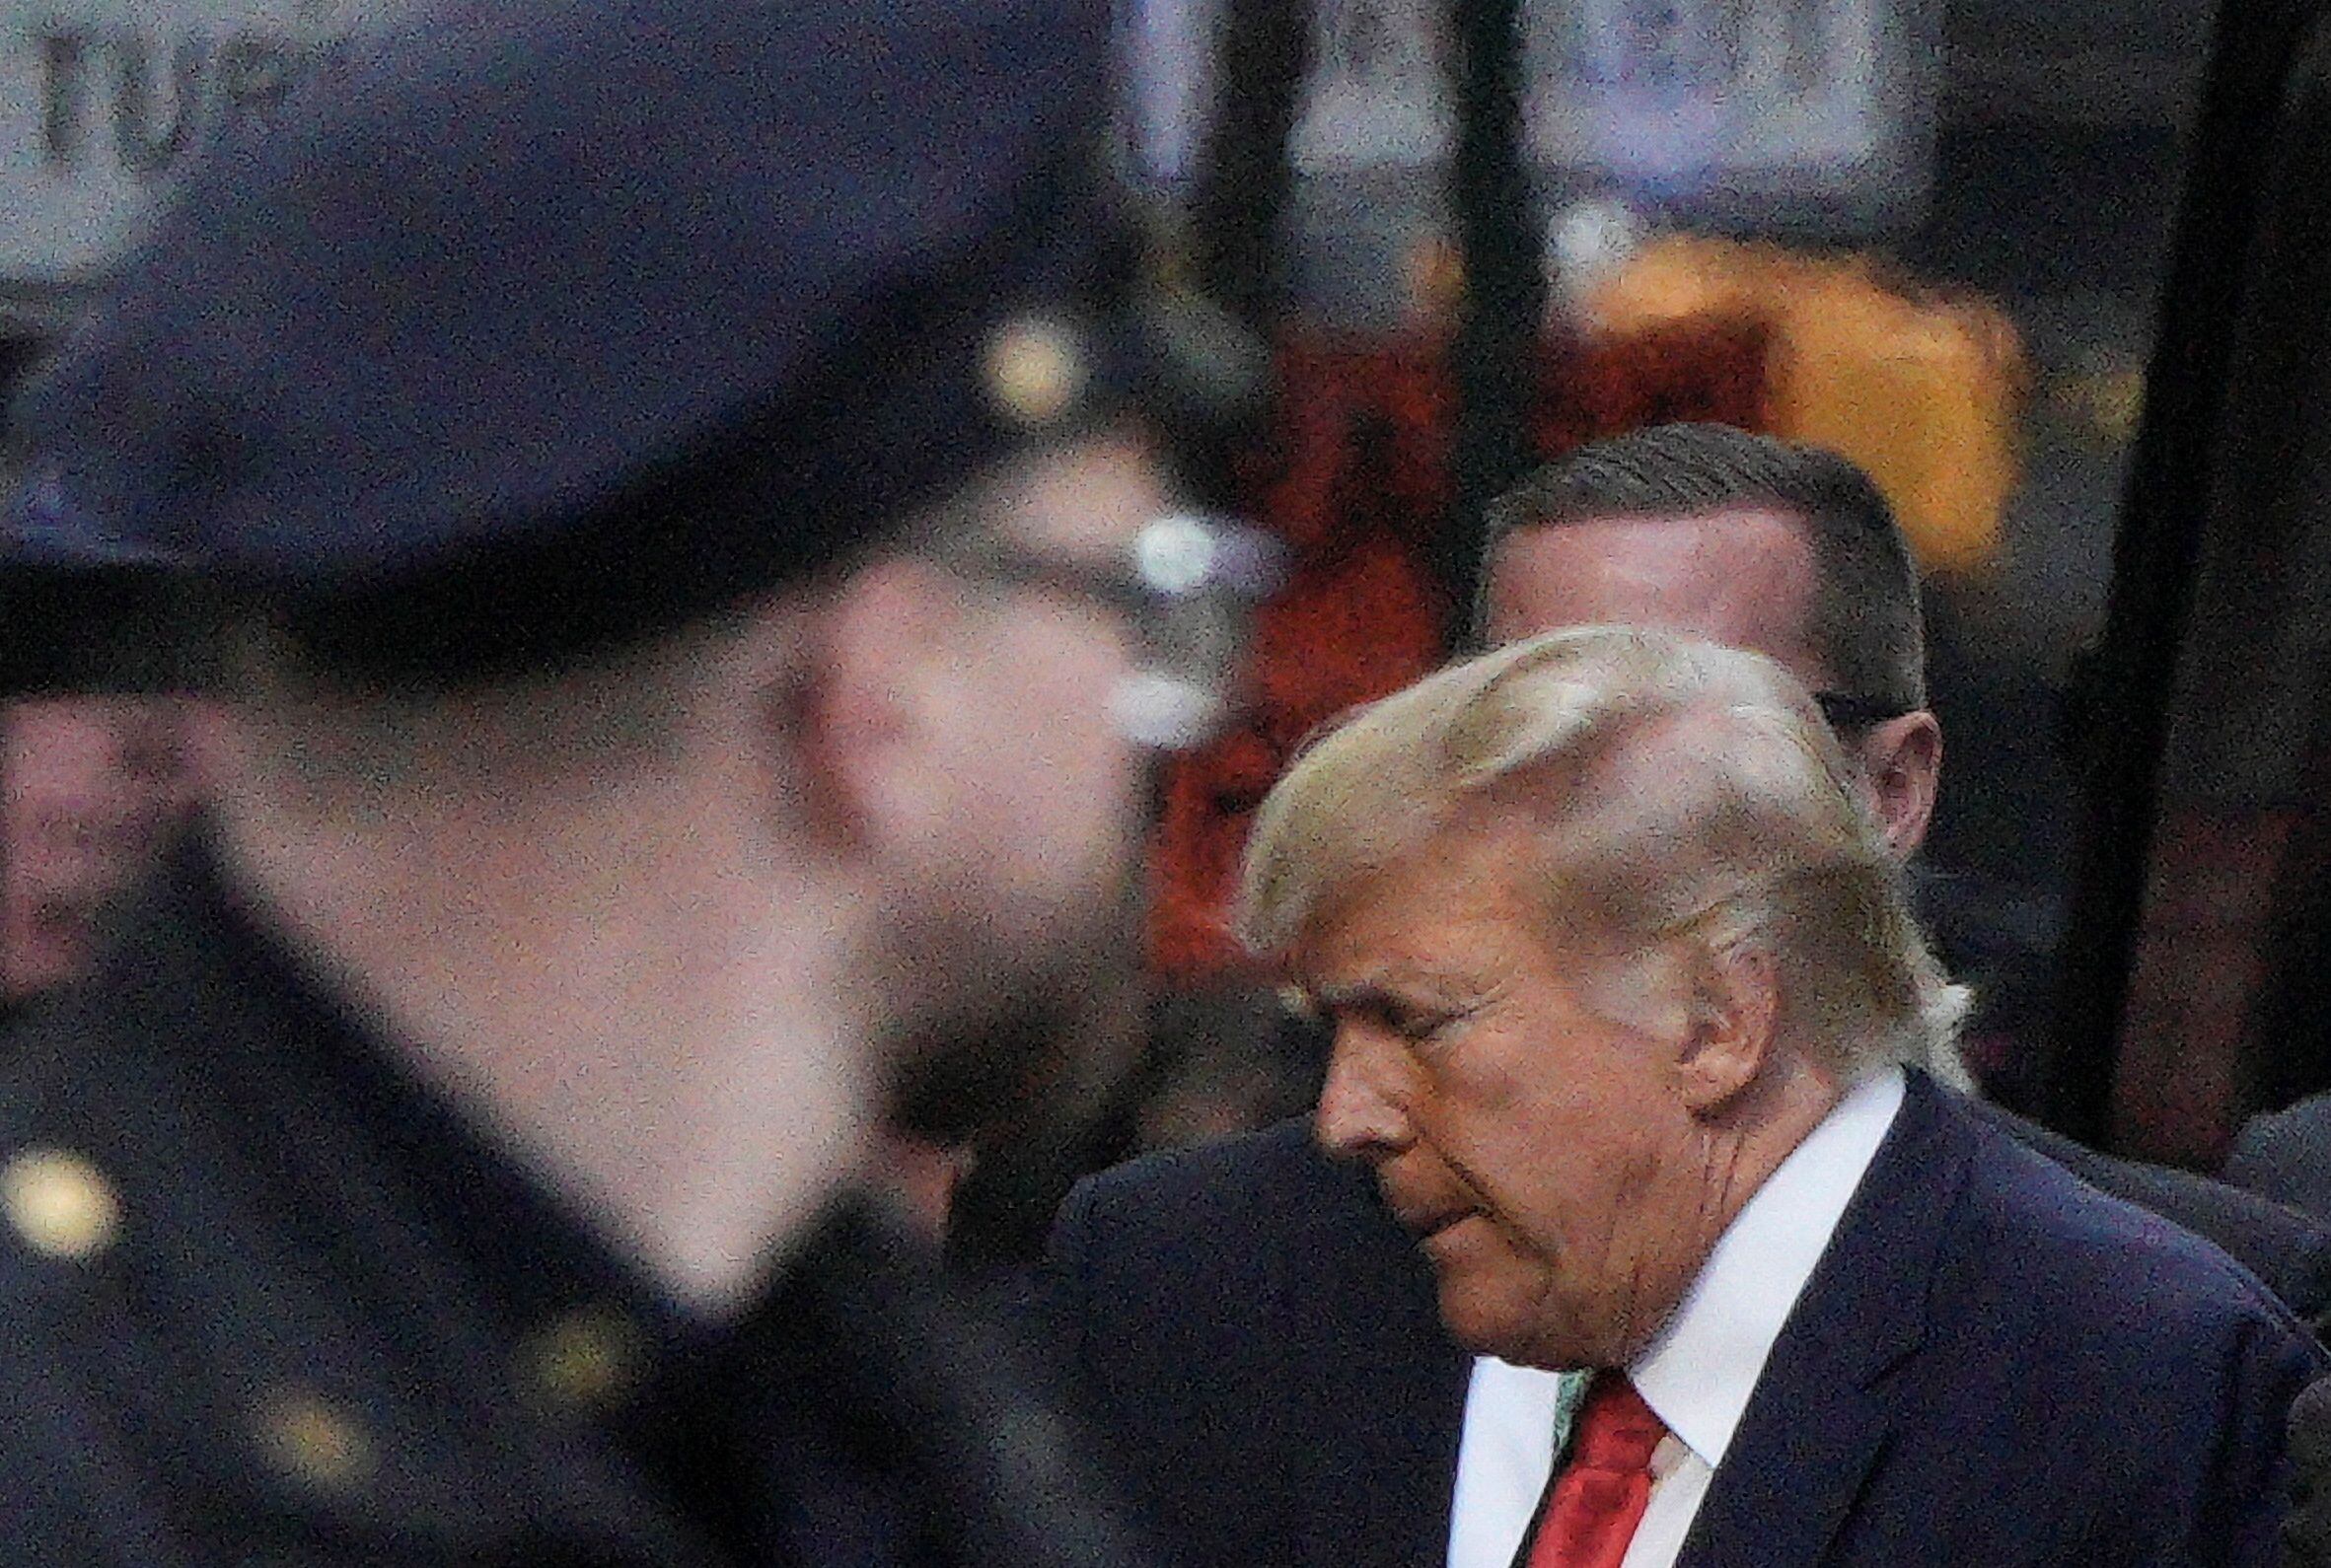 Qué pasará cuando Donald Trump se presente ante el tribunal de Nueva York para ser acusado. (REUTERS/Jeenah Moon)